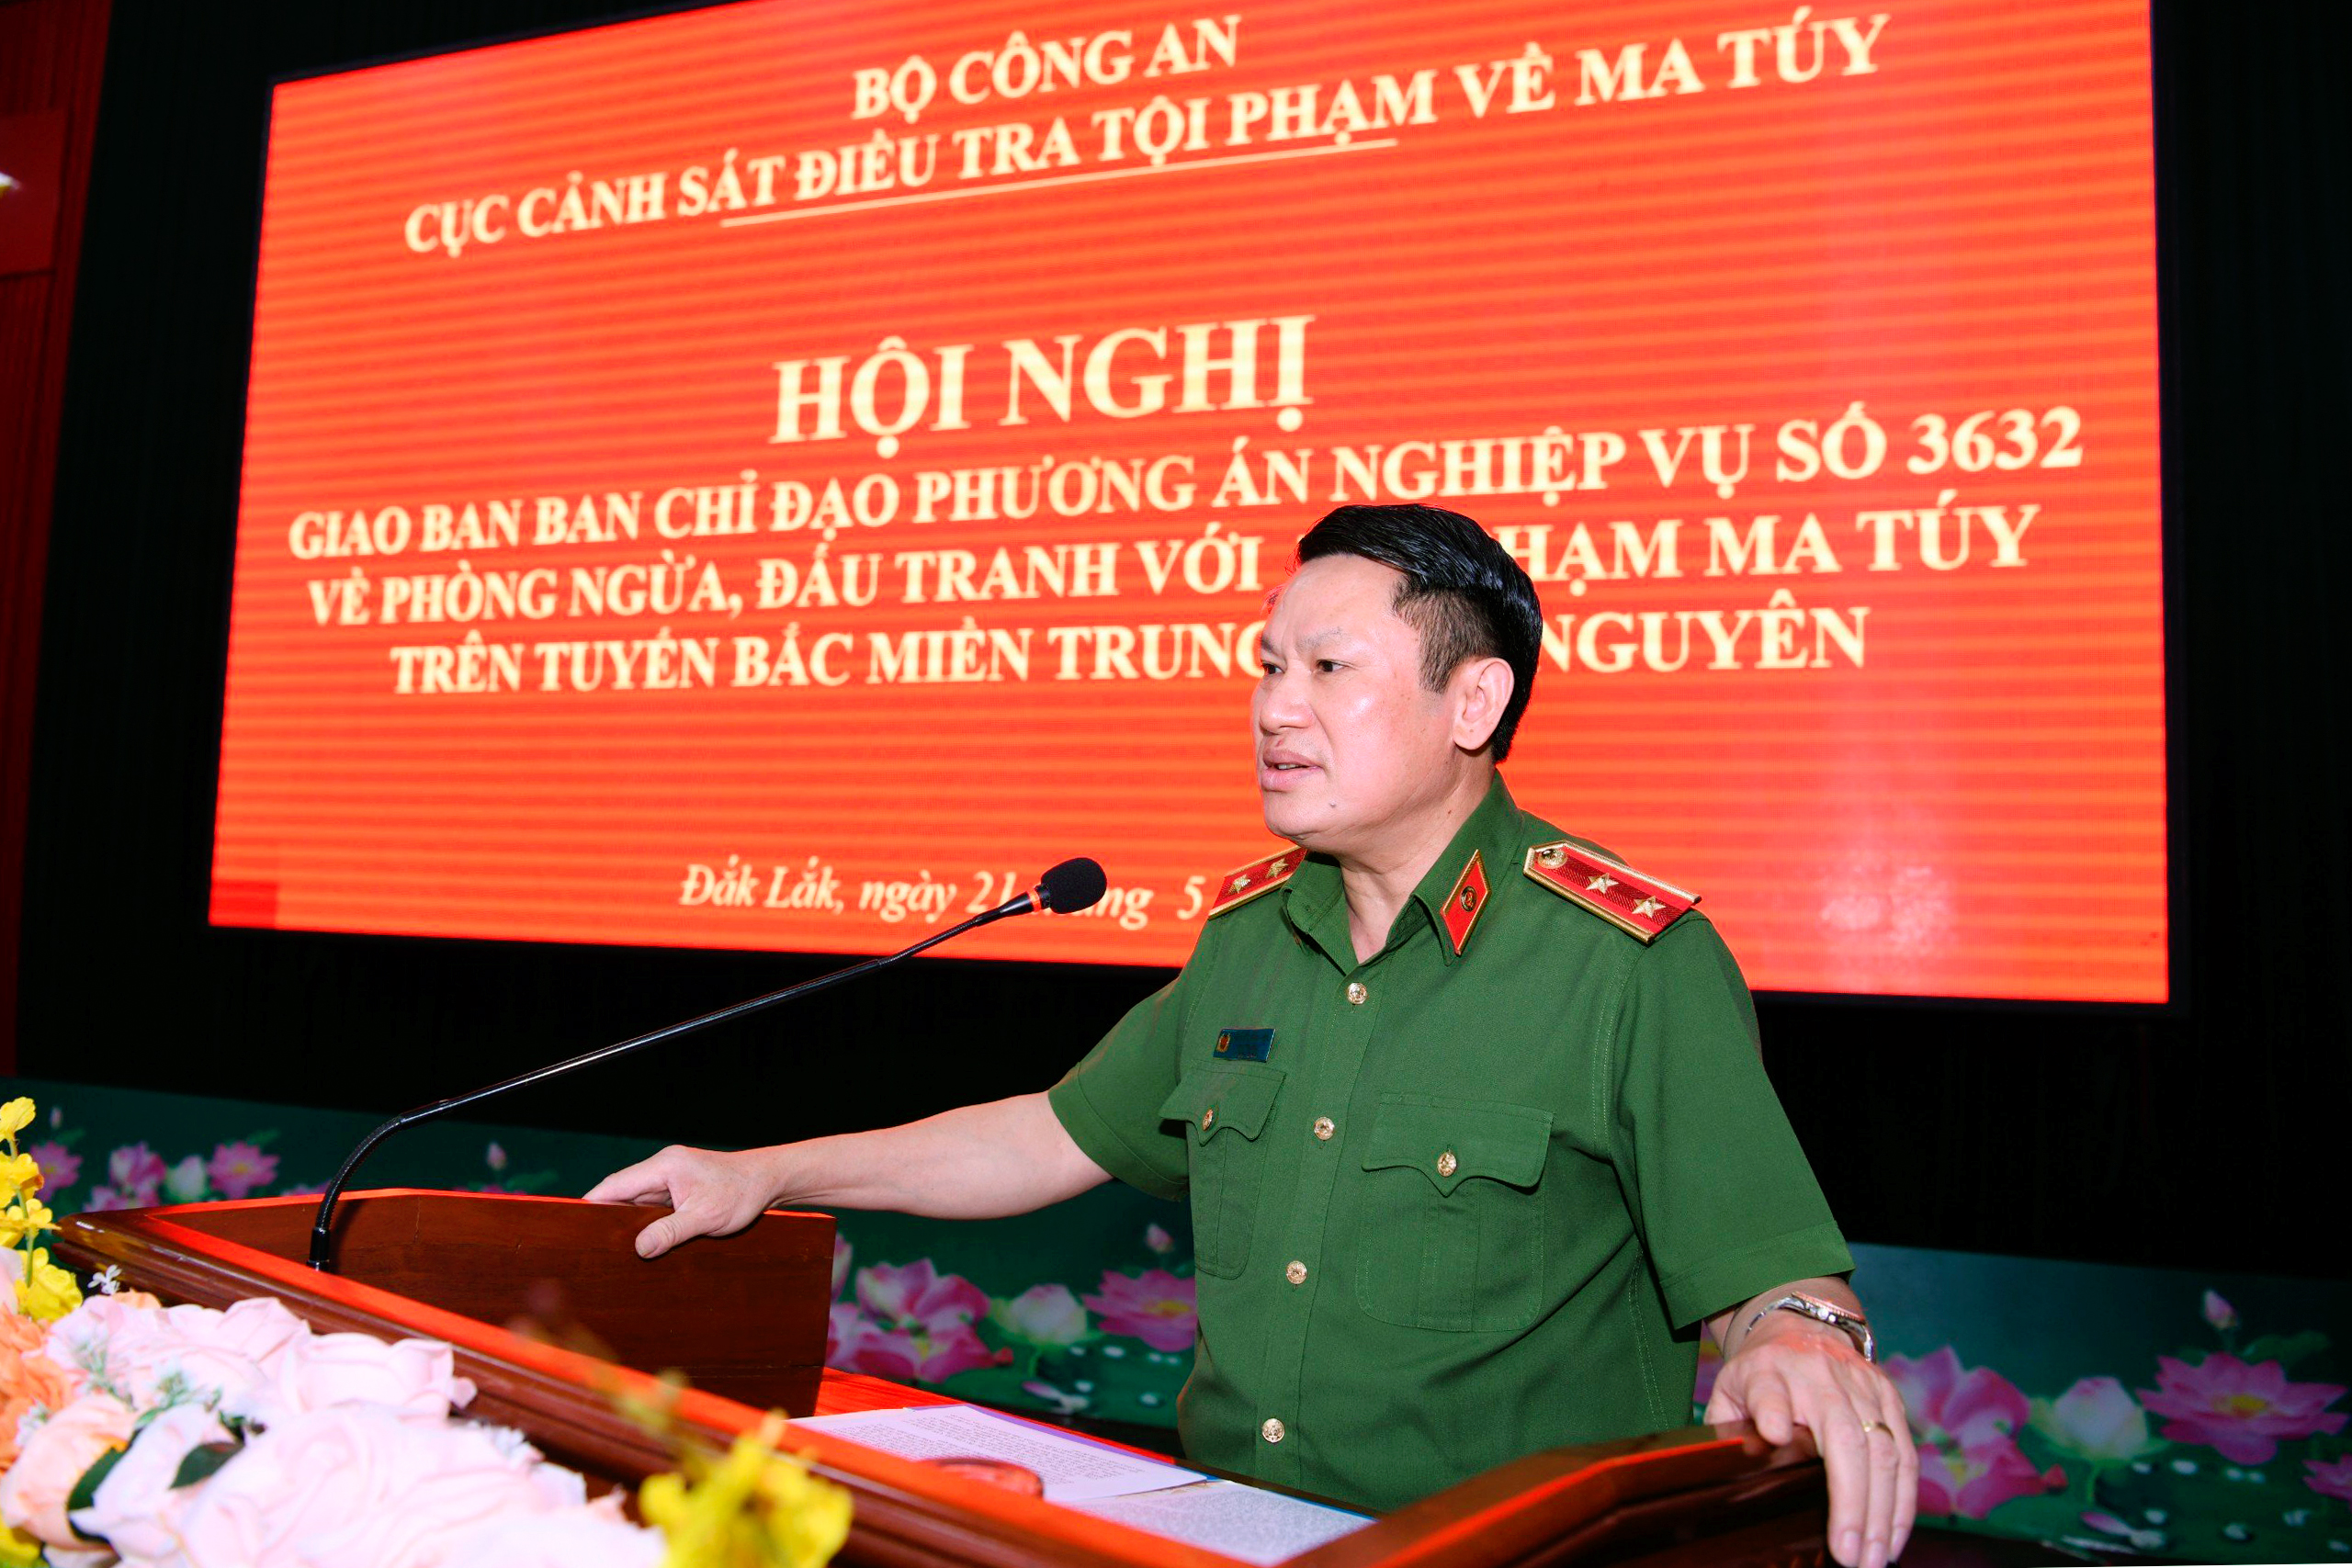 Ngăn chặn ma tuý từ “Tam giác vàng” vào Việt Nam